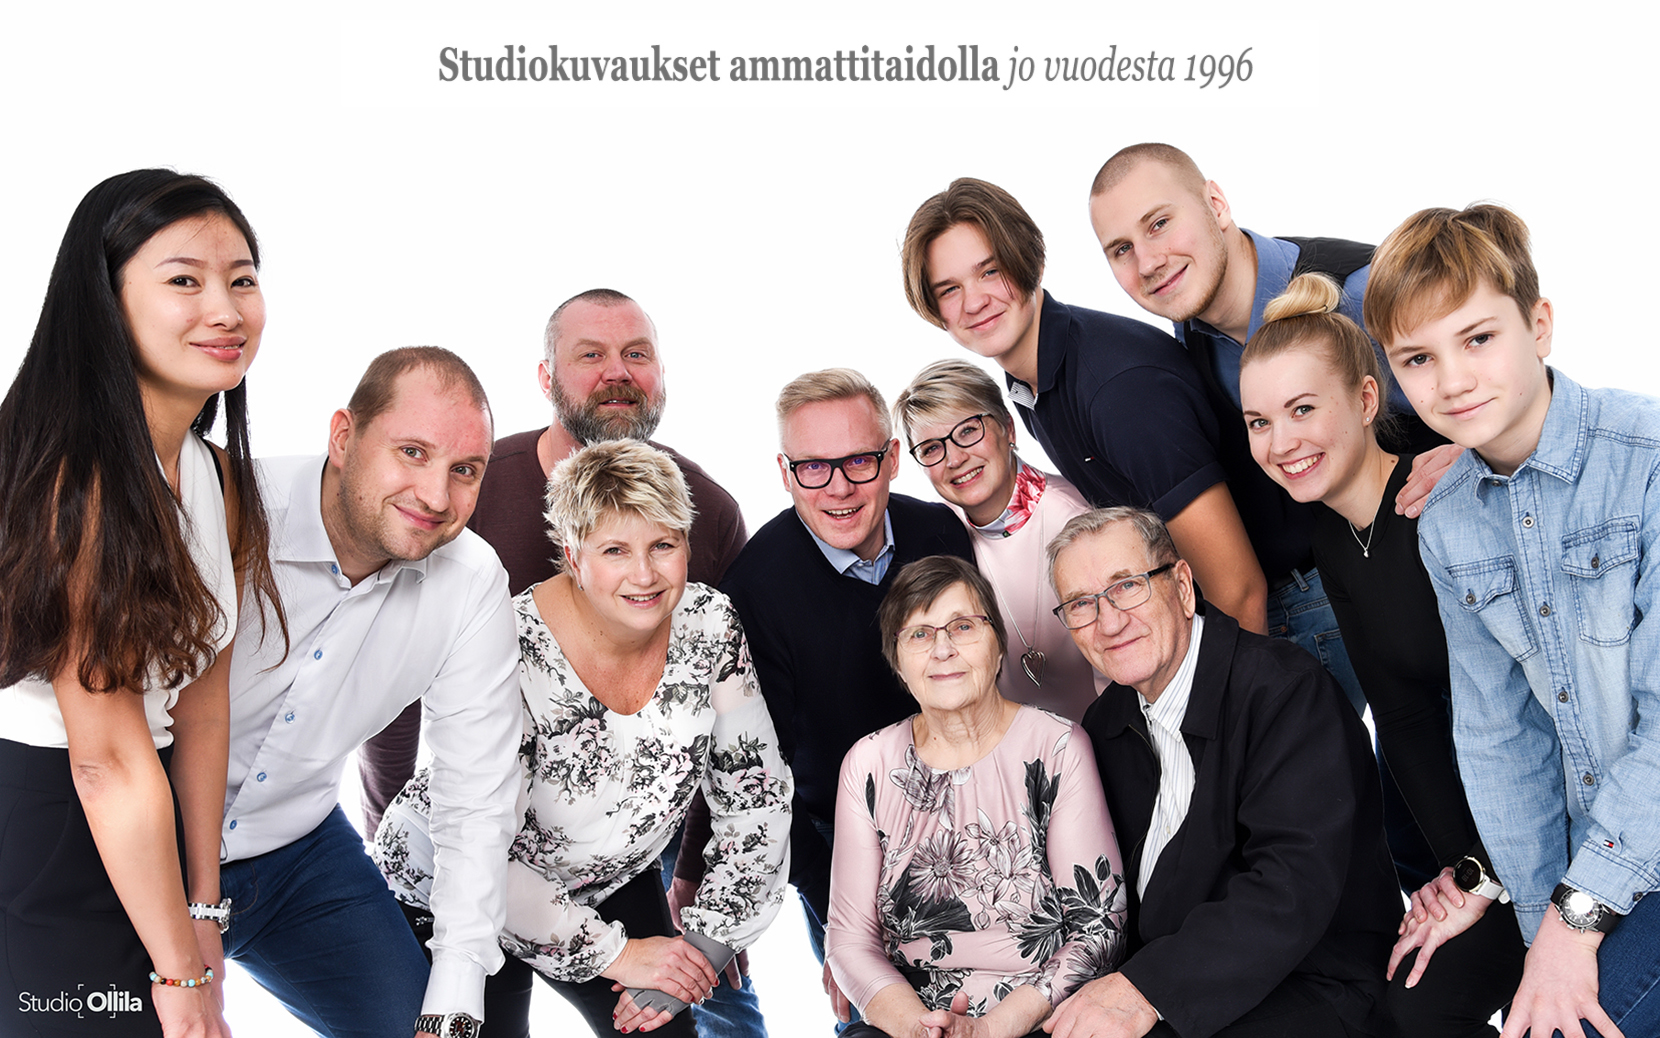 Studio Ollila - Studiokuvaukset ammattitaidolla jo vuodesta 1996